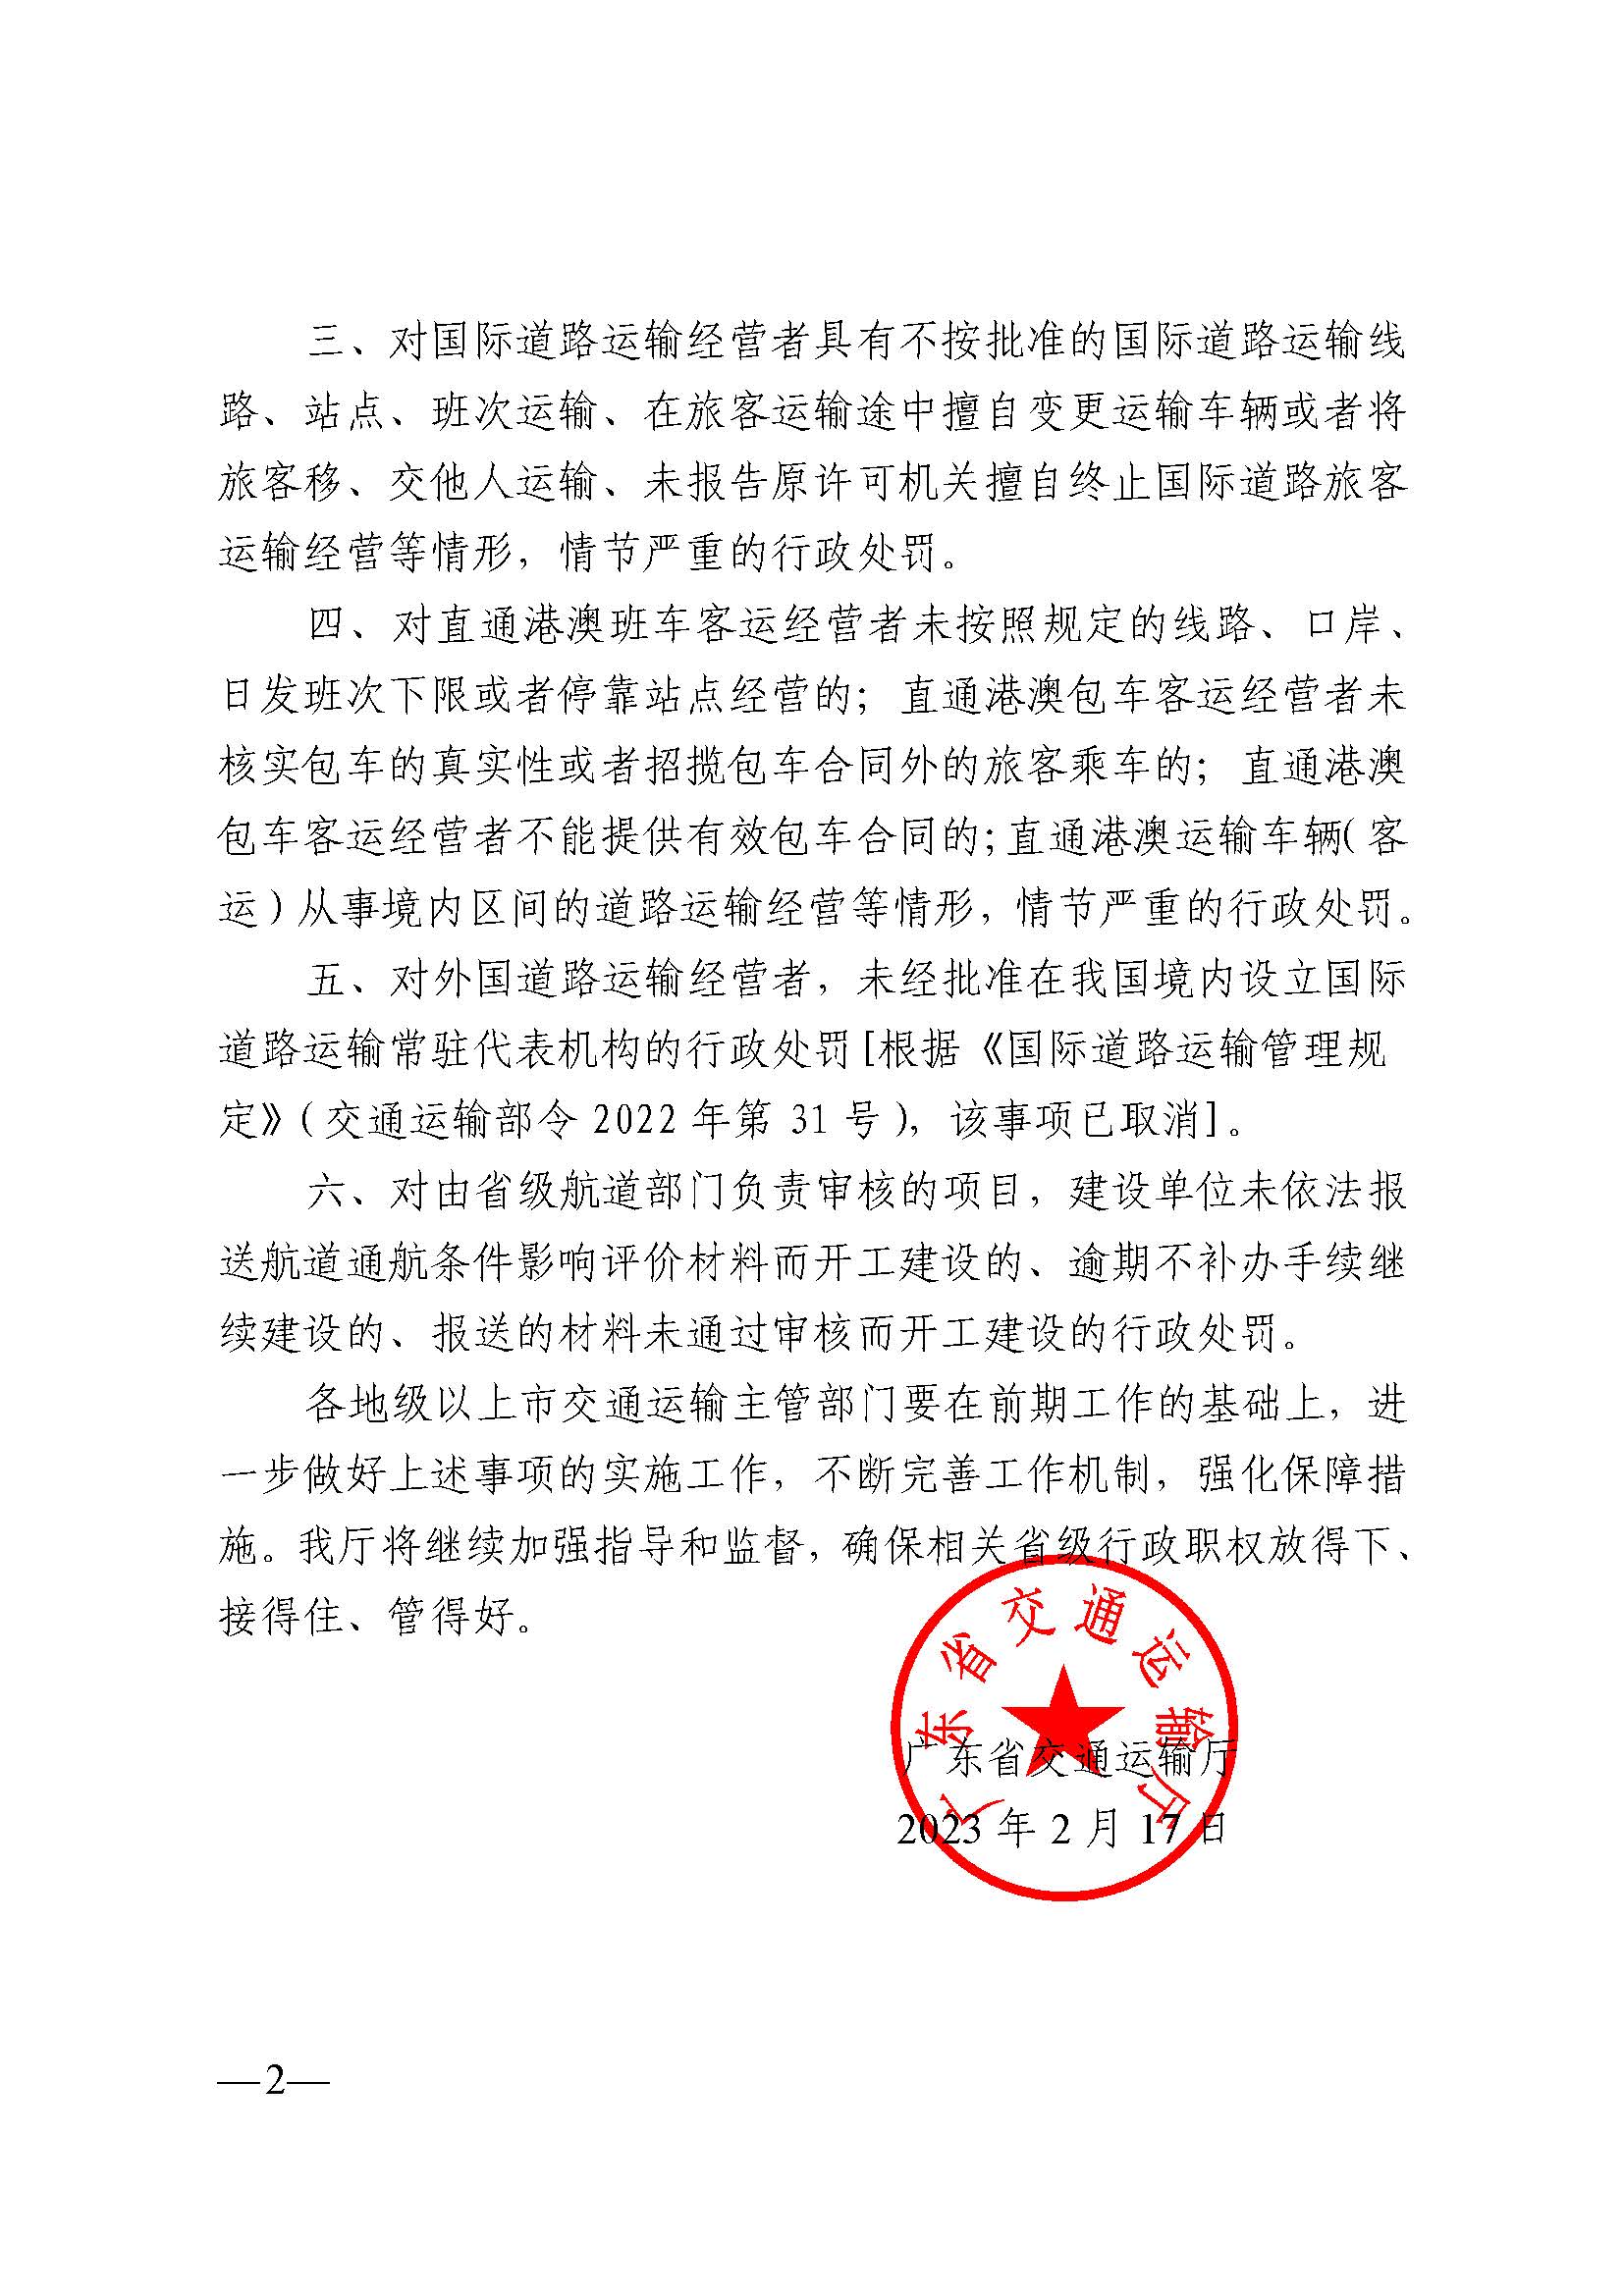 广东省交通运输厅关于继续委托实施部分省级行政职权事项的通知_页面_2.jpg